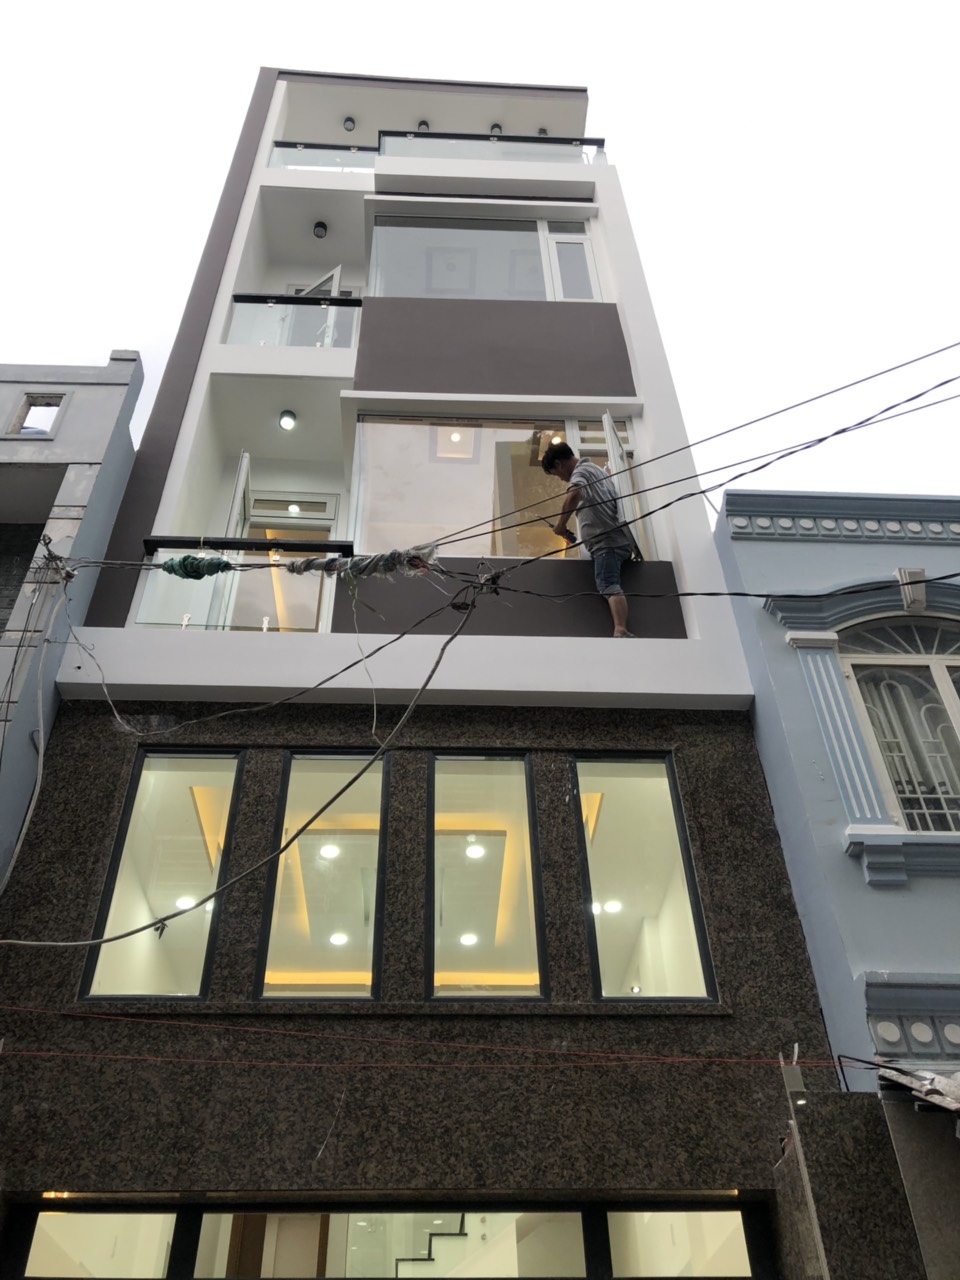 Bán nhà mới, hoàn công hoàn chỉnh đẹp bậc nhất quận Gò Vấp, tp Hồ Chí Minh
Liên hệ:  0909644323, 10492563